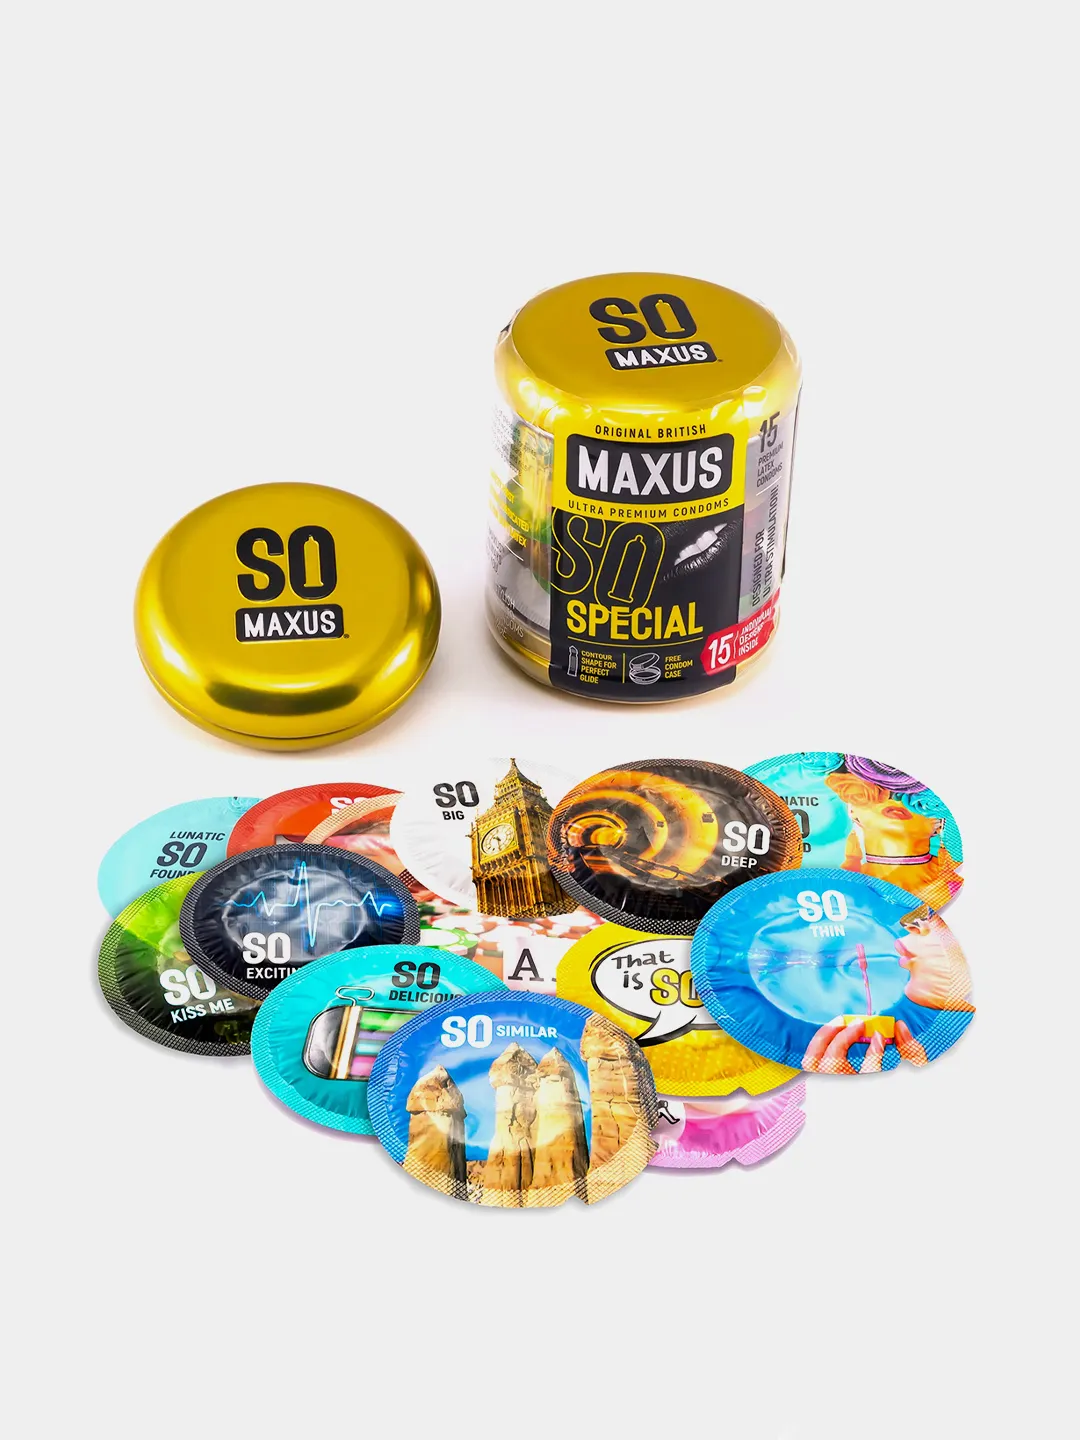 MAXUS SPECIAL № 15 презервативы точечно-ребристые в кейсе, 15 шт. Vestalshop.ru - Изображение 2